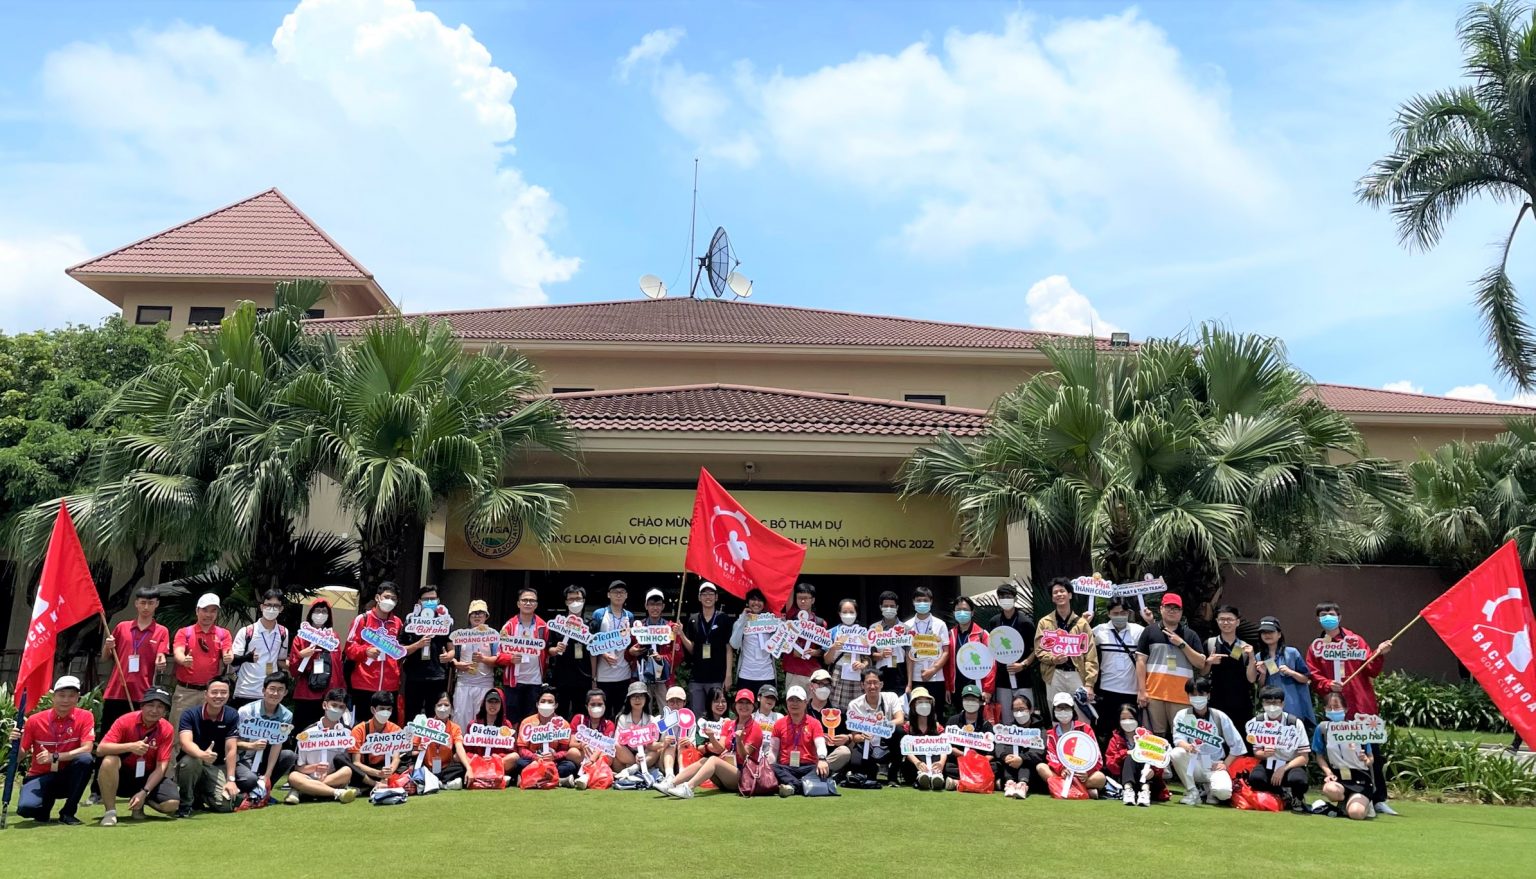 Kết thúc vòng loại giải vô địch các CLB Golf Hà Nội Mở rộng 2022